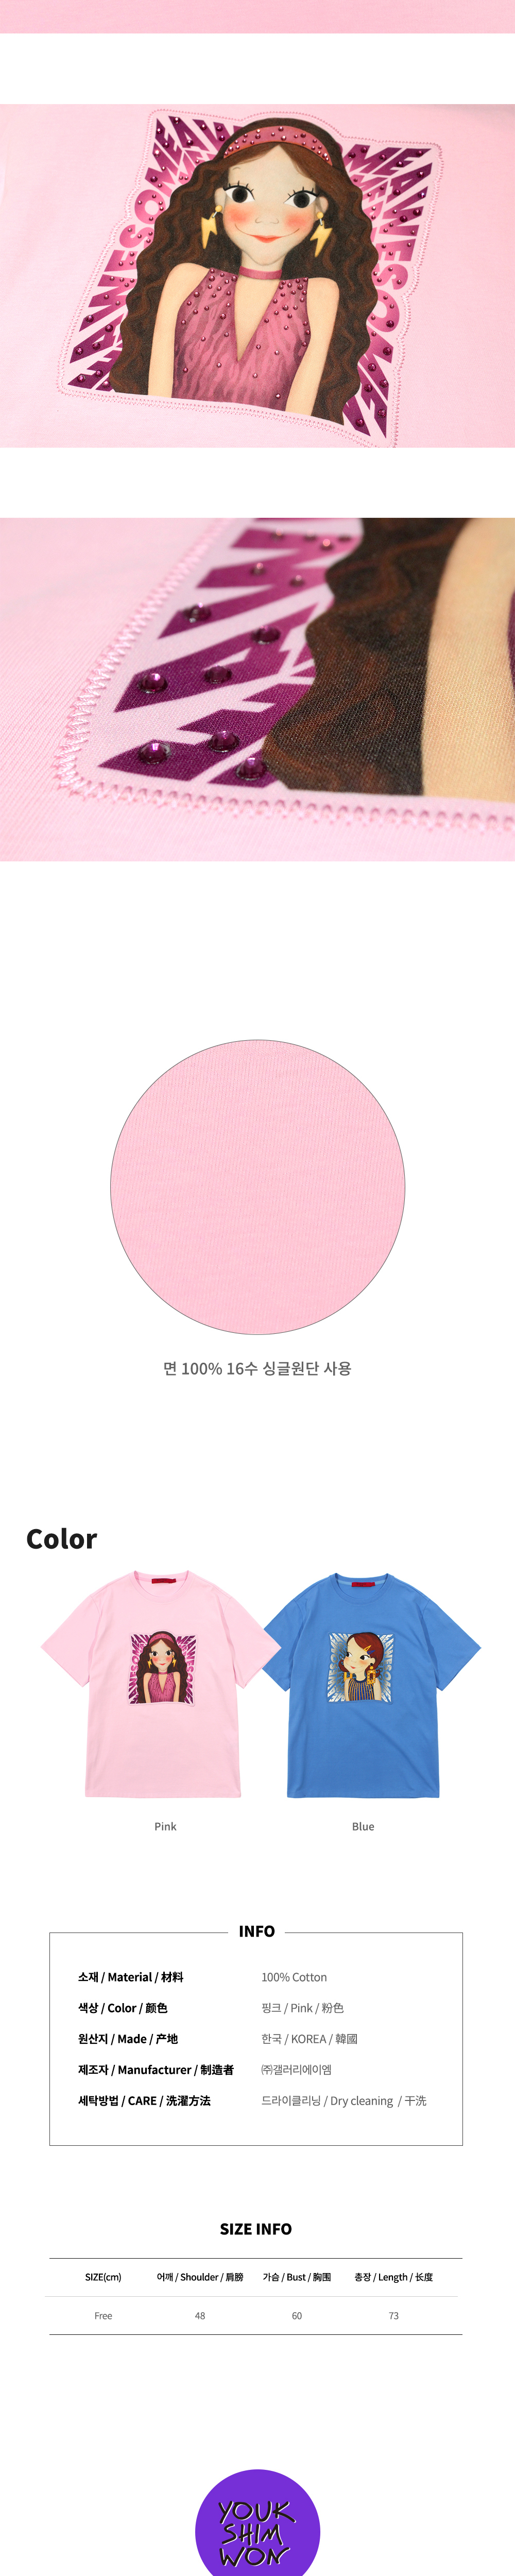 配件 baby pink 彩色图像-S1L1